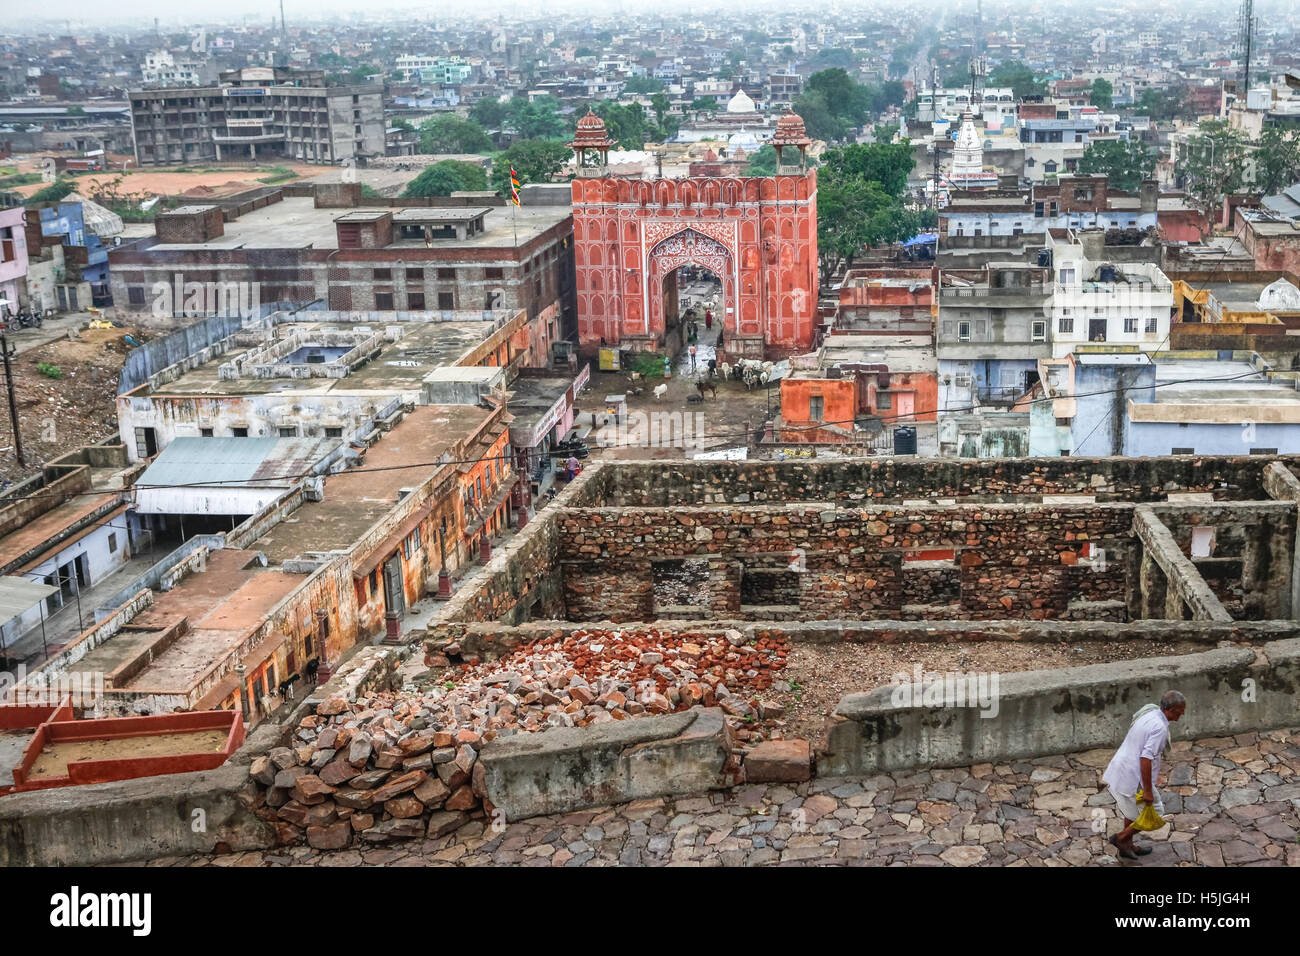 Ein Mann zu Fuß auf dem Weg, der zu Surya Mandir (Sun Temple), mit Galta Gate und ein Teil der Stadt Jaipur kann im Hintergrund gesehen werden. Jaipur, Indien. Stockfoto